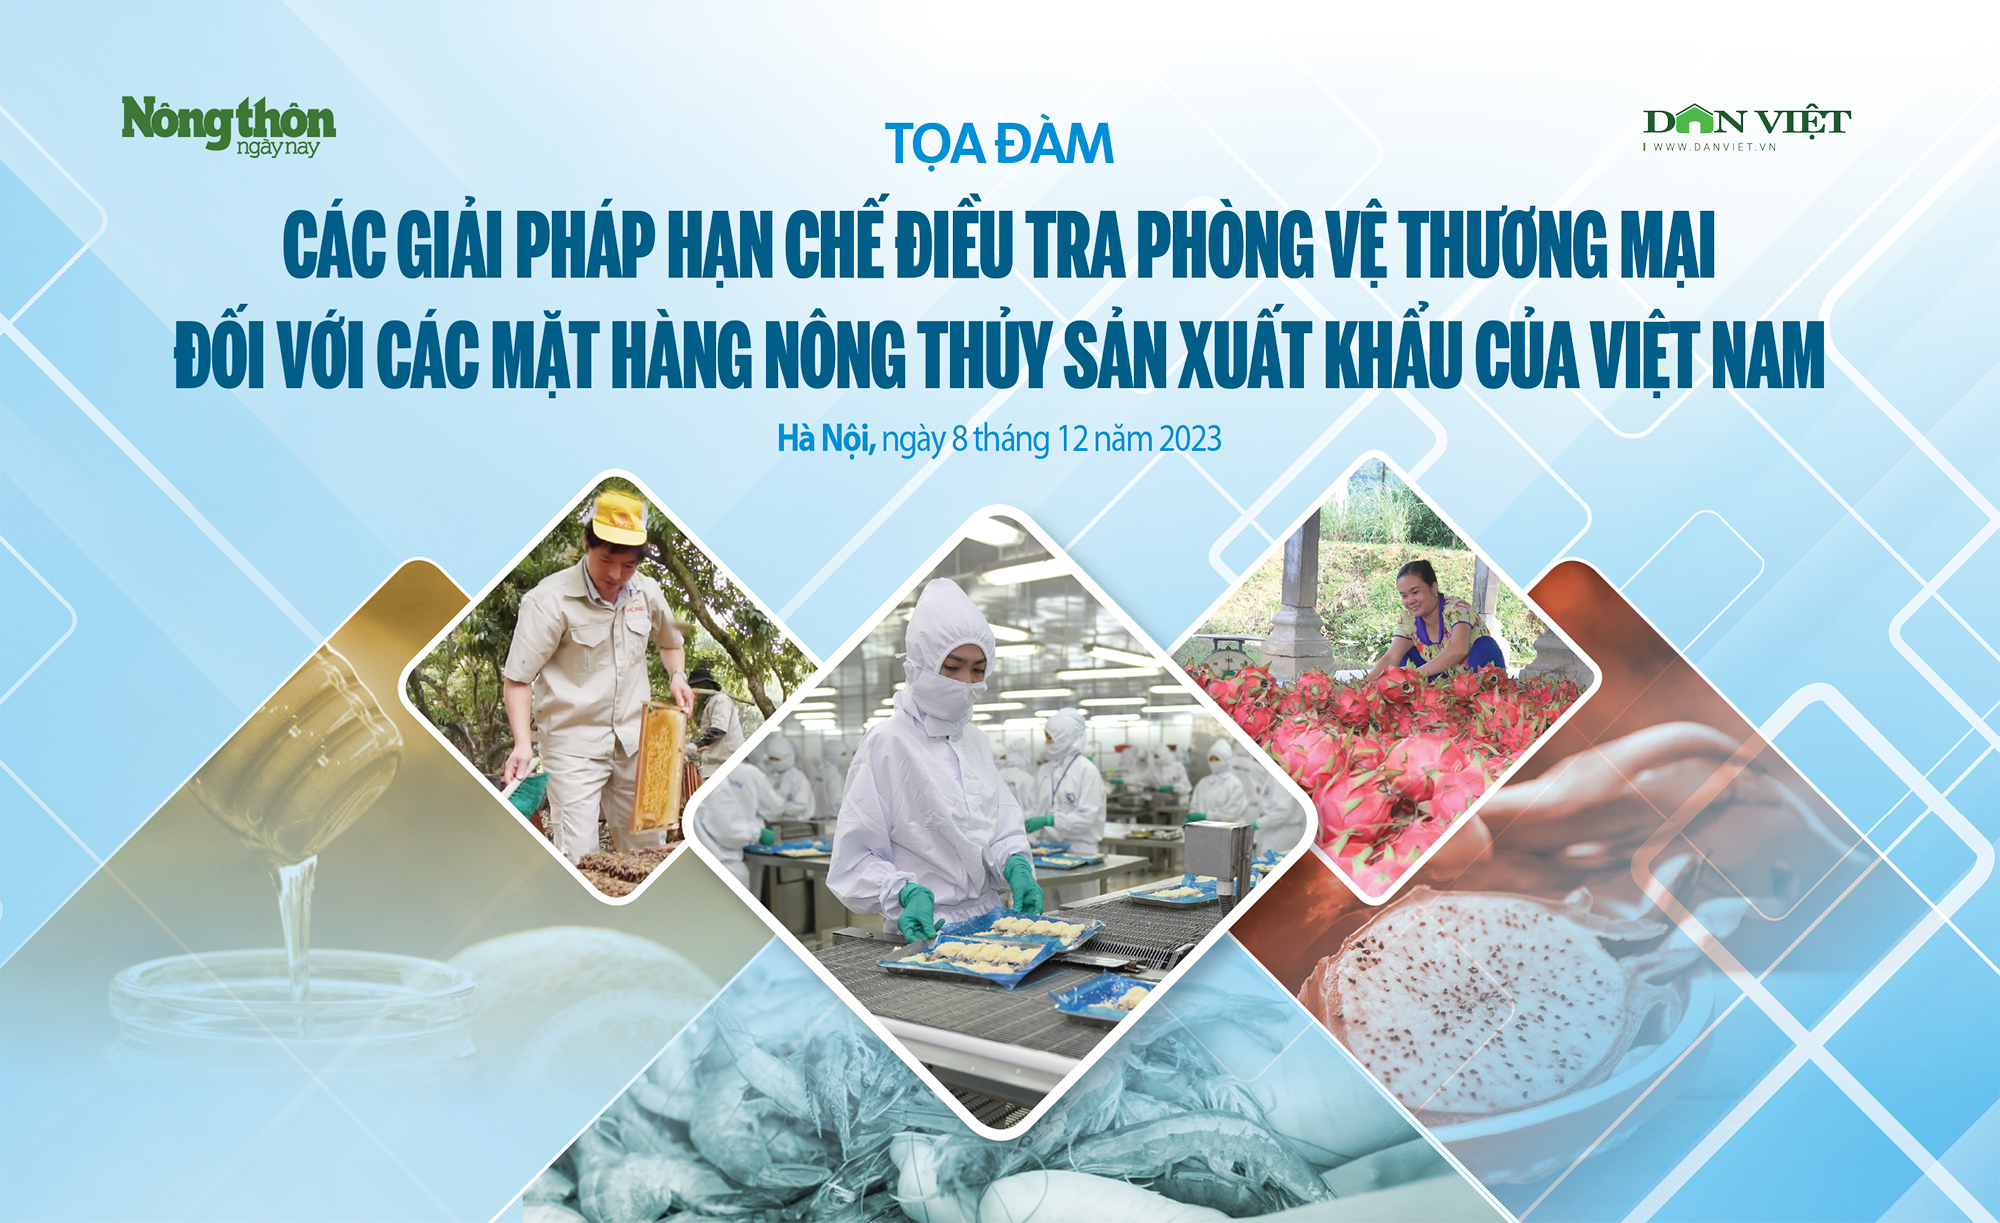 Làm gì để nông thủy sản Việt Nam &quot;sống khoẻ&quot; trước sự gia tăng Điều tra phòng vệ Thương mại của các nước lớn? - Ảnh 1.